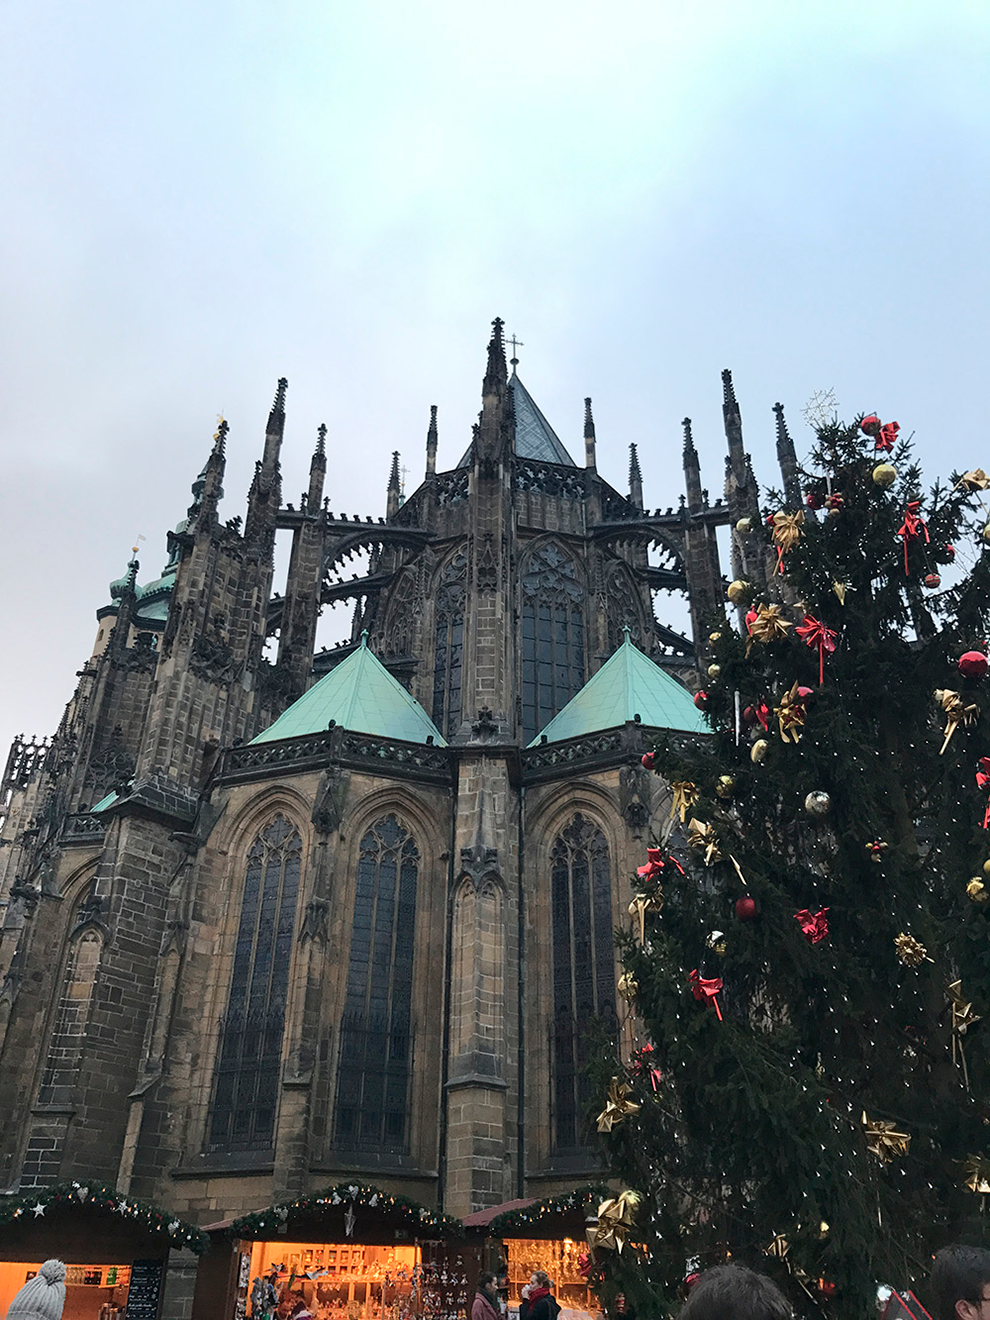 К новогодним праздникам около собора устанавливают украшенную елку. Источник: Анастасия Постникова